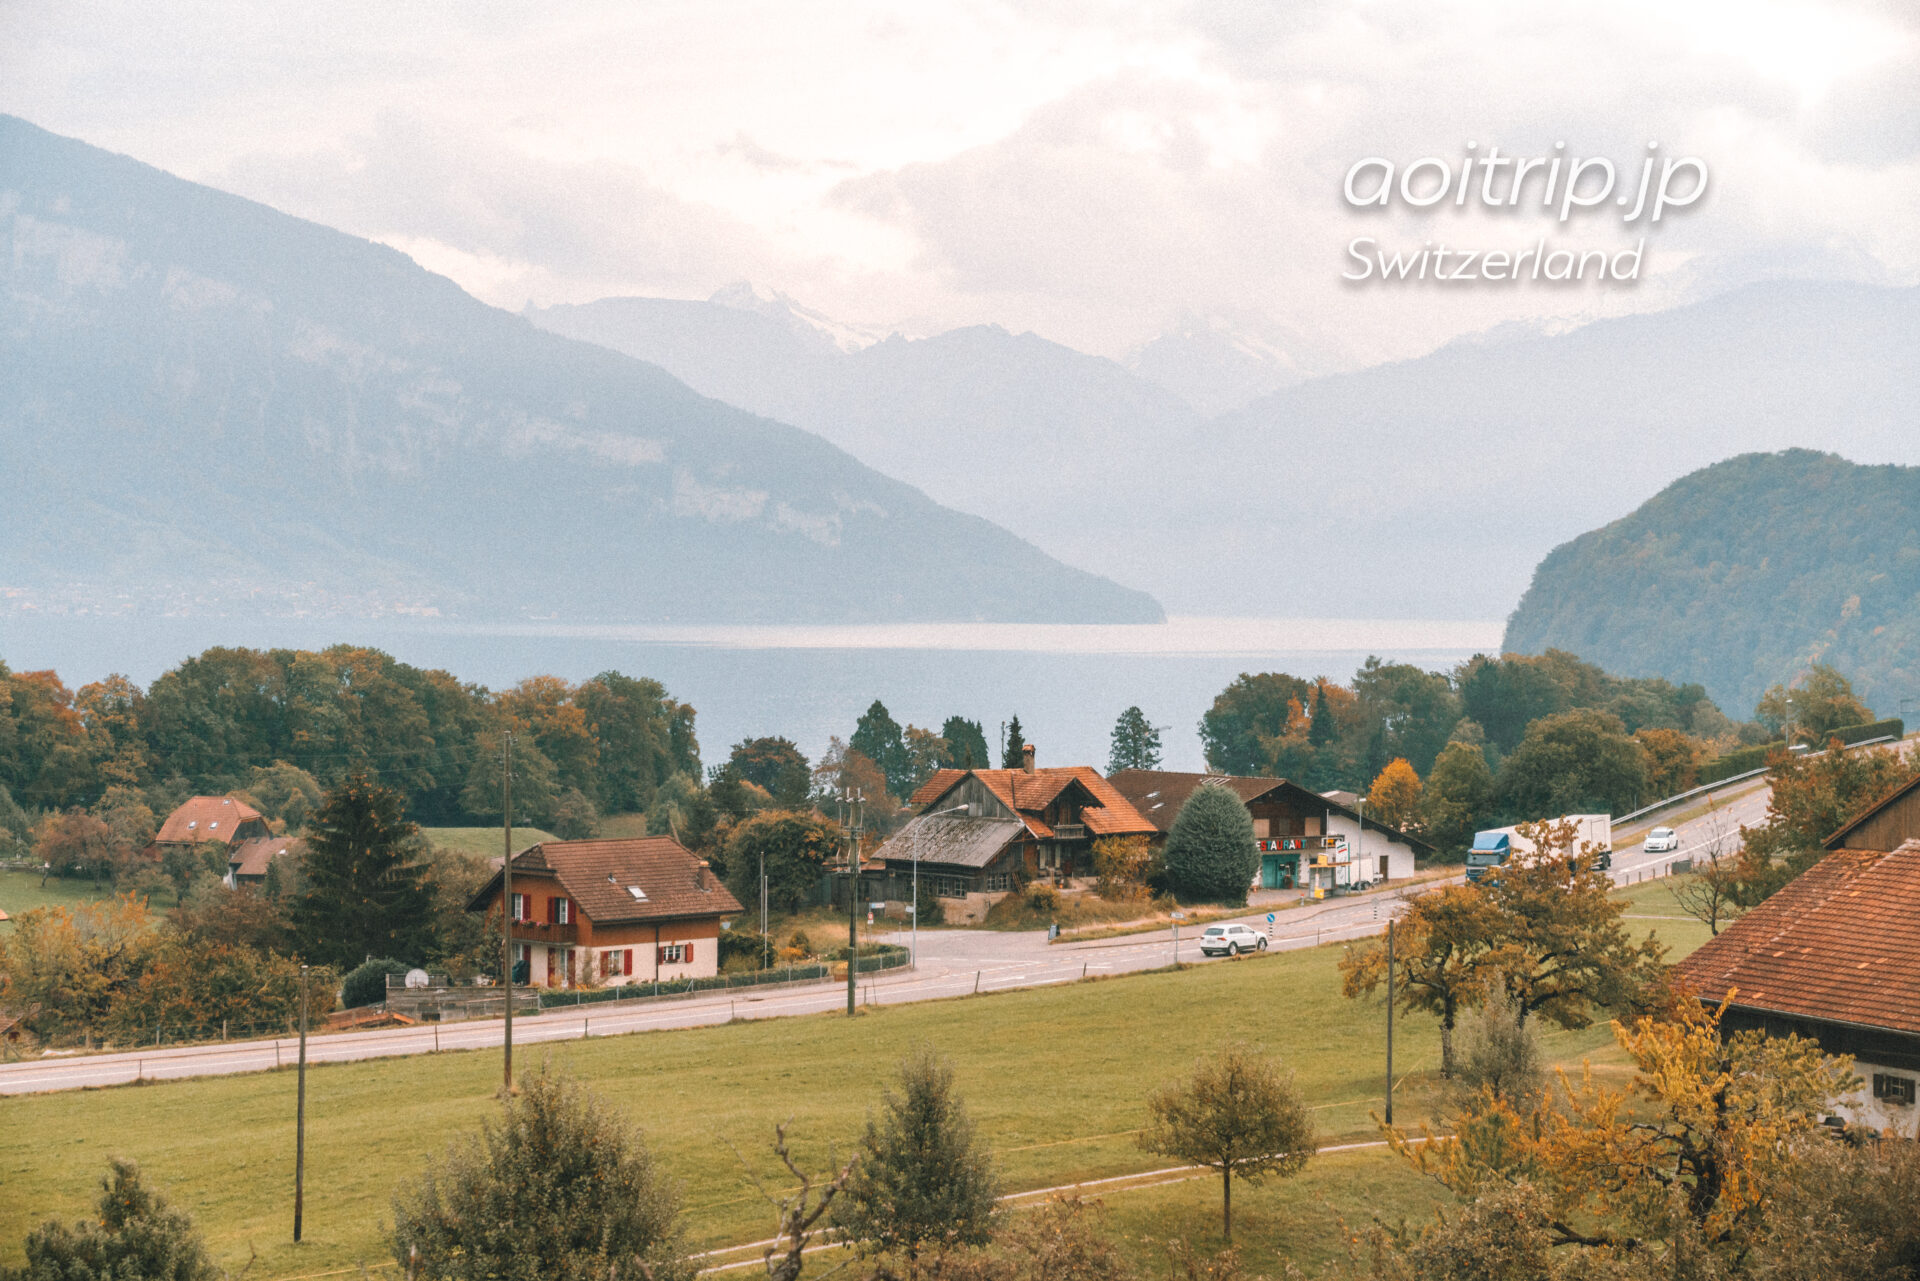 スイス鉄道の車窓からの景色